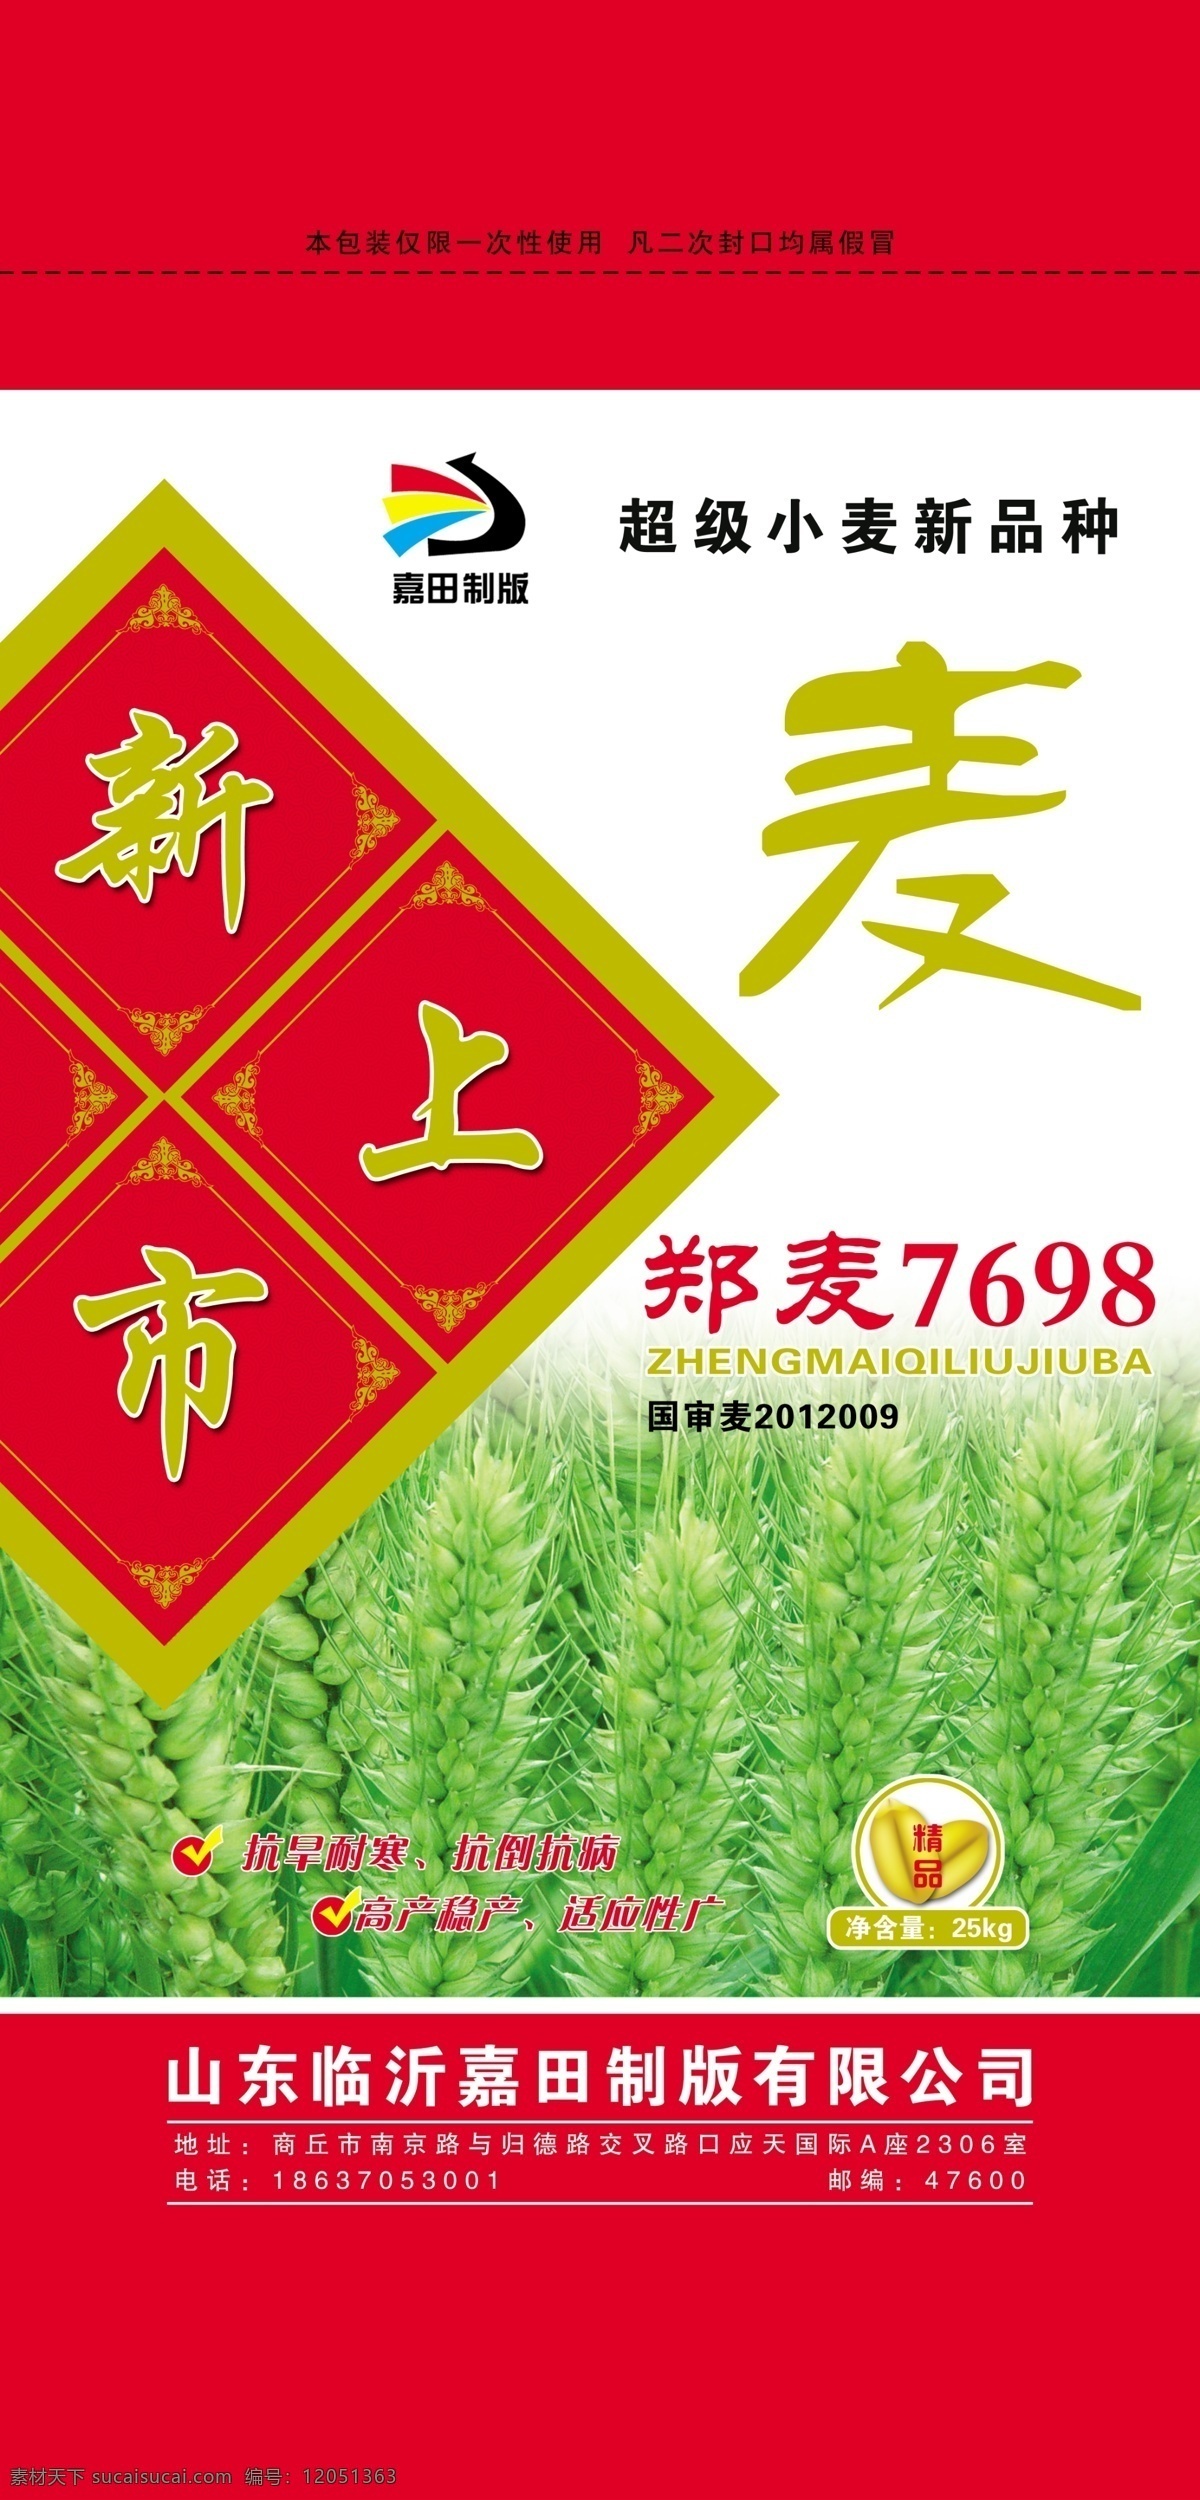 小麦种子 小麦 种子 包装 商标 logo 小麦包装 包装设计 红色